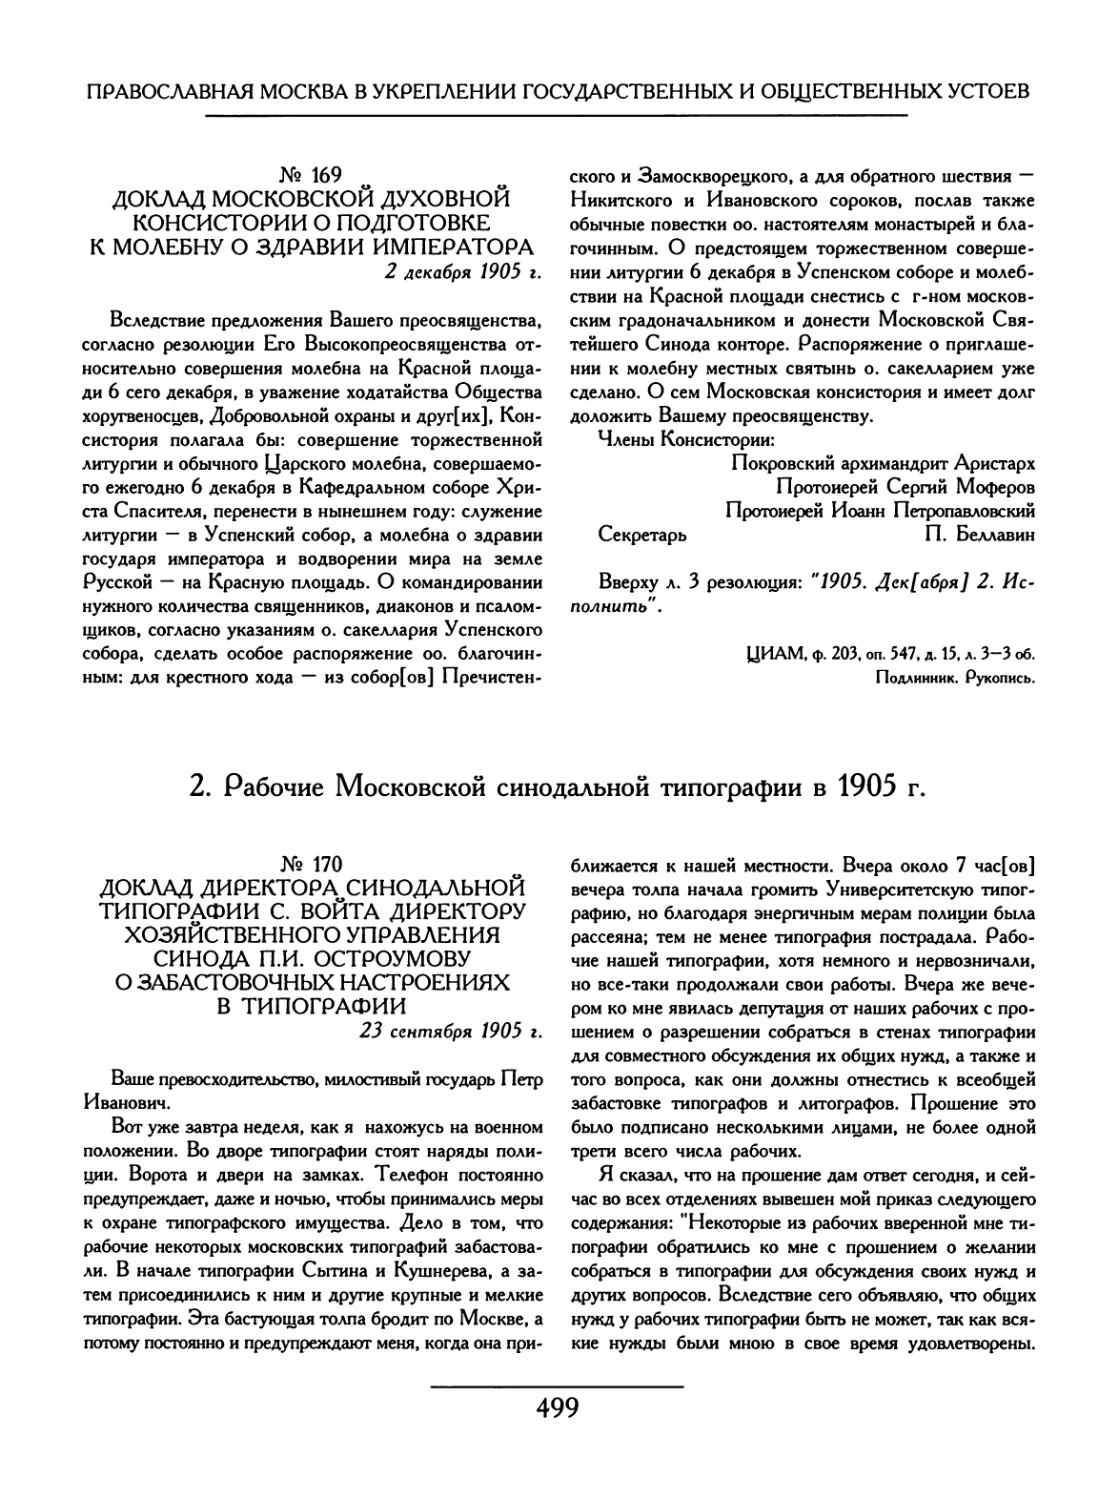 2.Рабочие Московской синодальной типографии в 1905г.